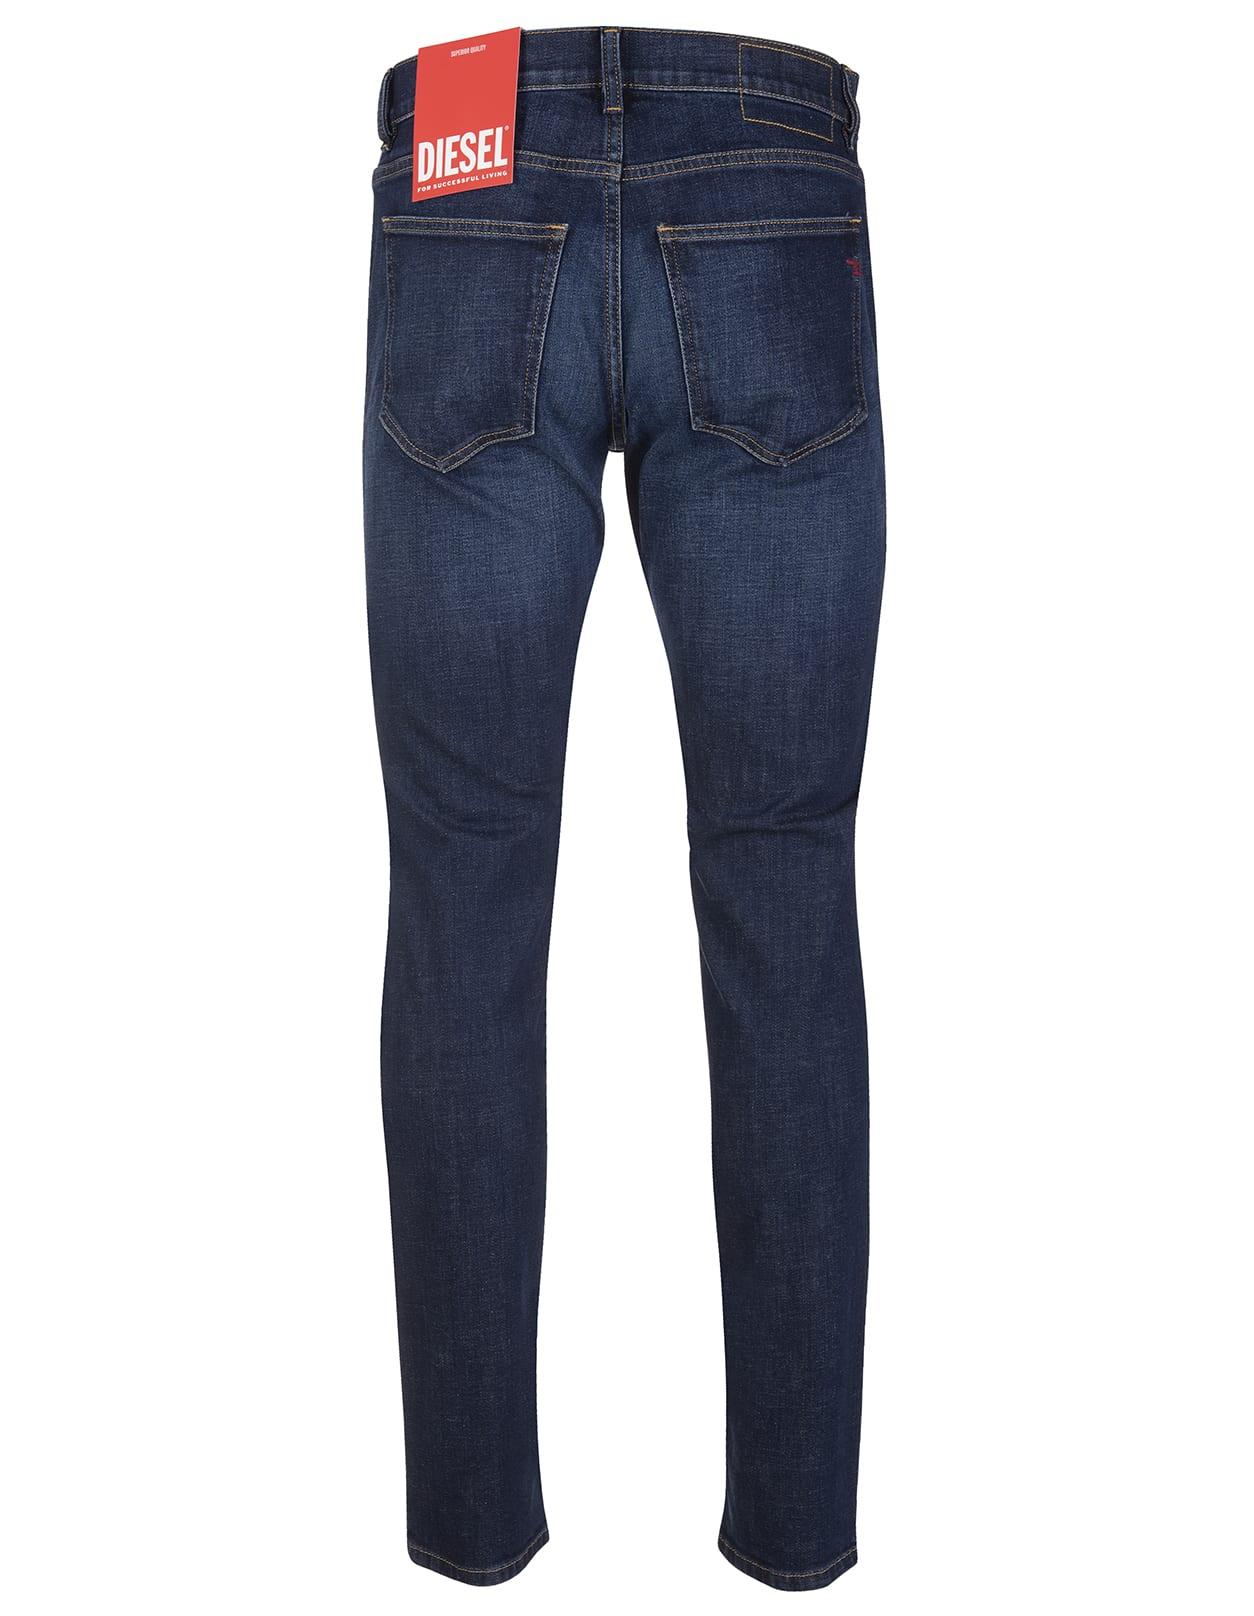 DIESEL Man - Dark Blue 2019 D-strukt Z9b89 Slim Jeans for Men 